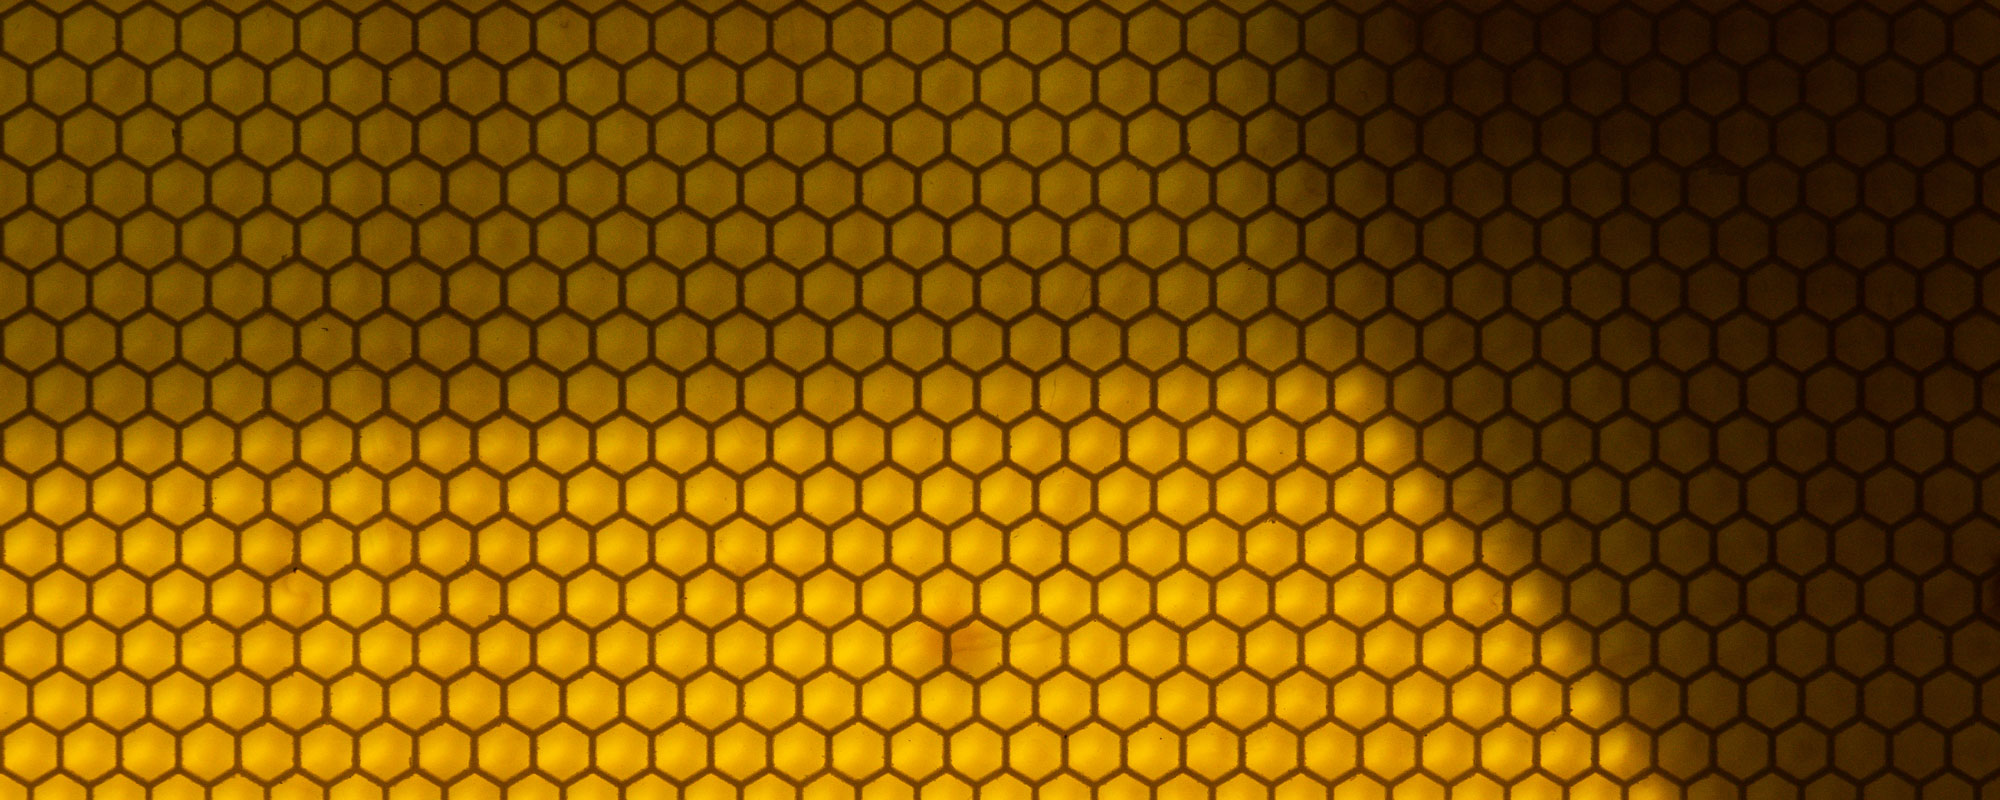 Honigkamm in einem Bienenstock